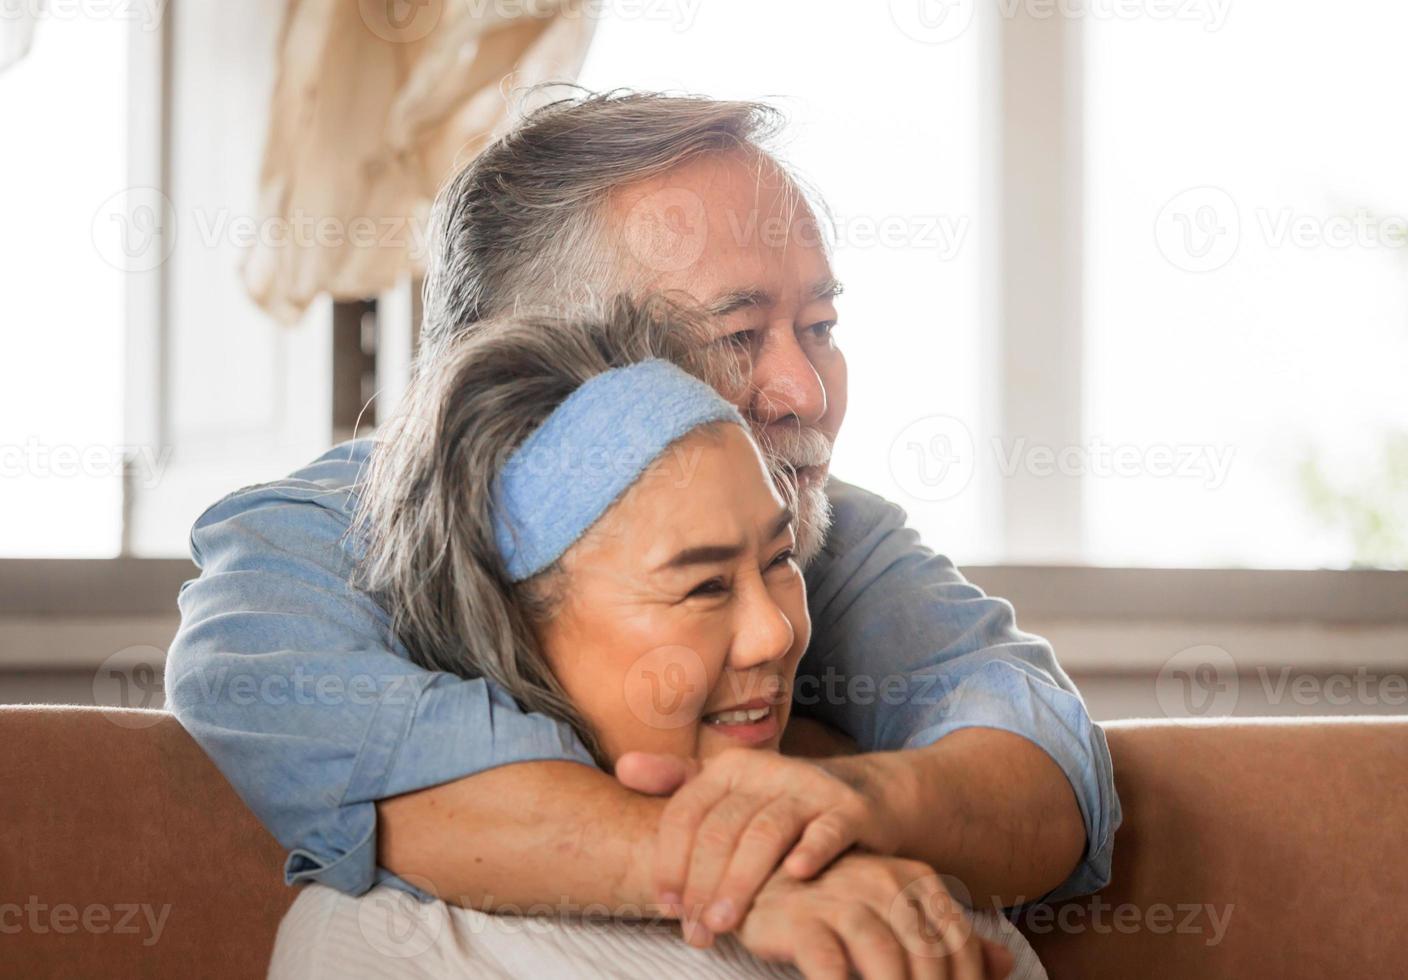 portrait en gros plan d'un couple asiatique senior heureux embrassant dans le salon photo